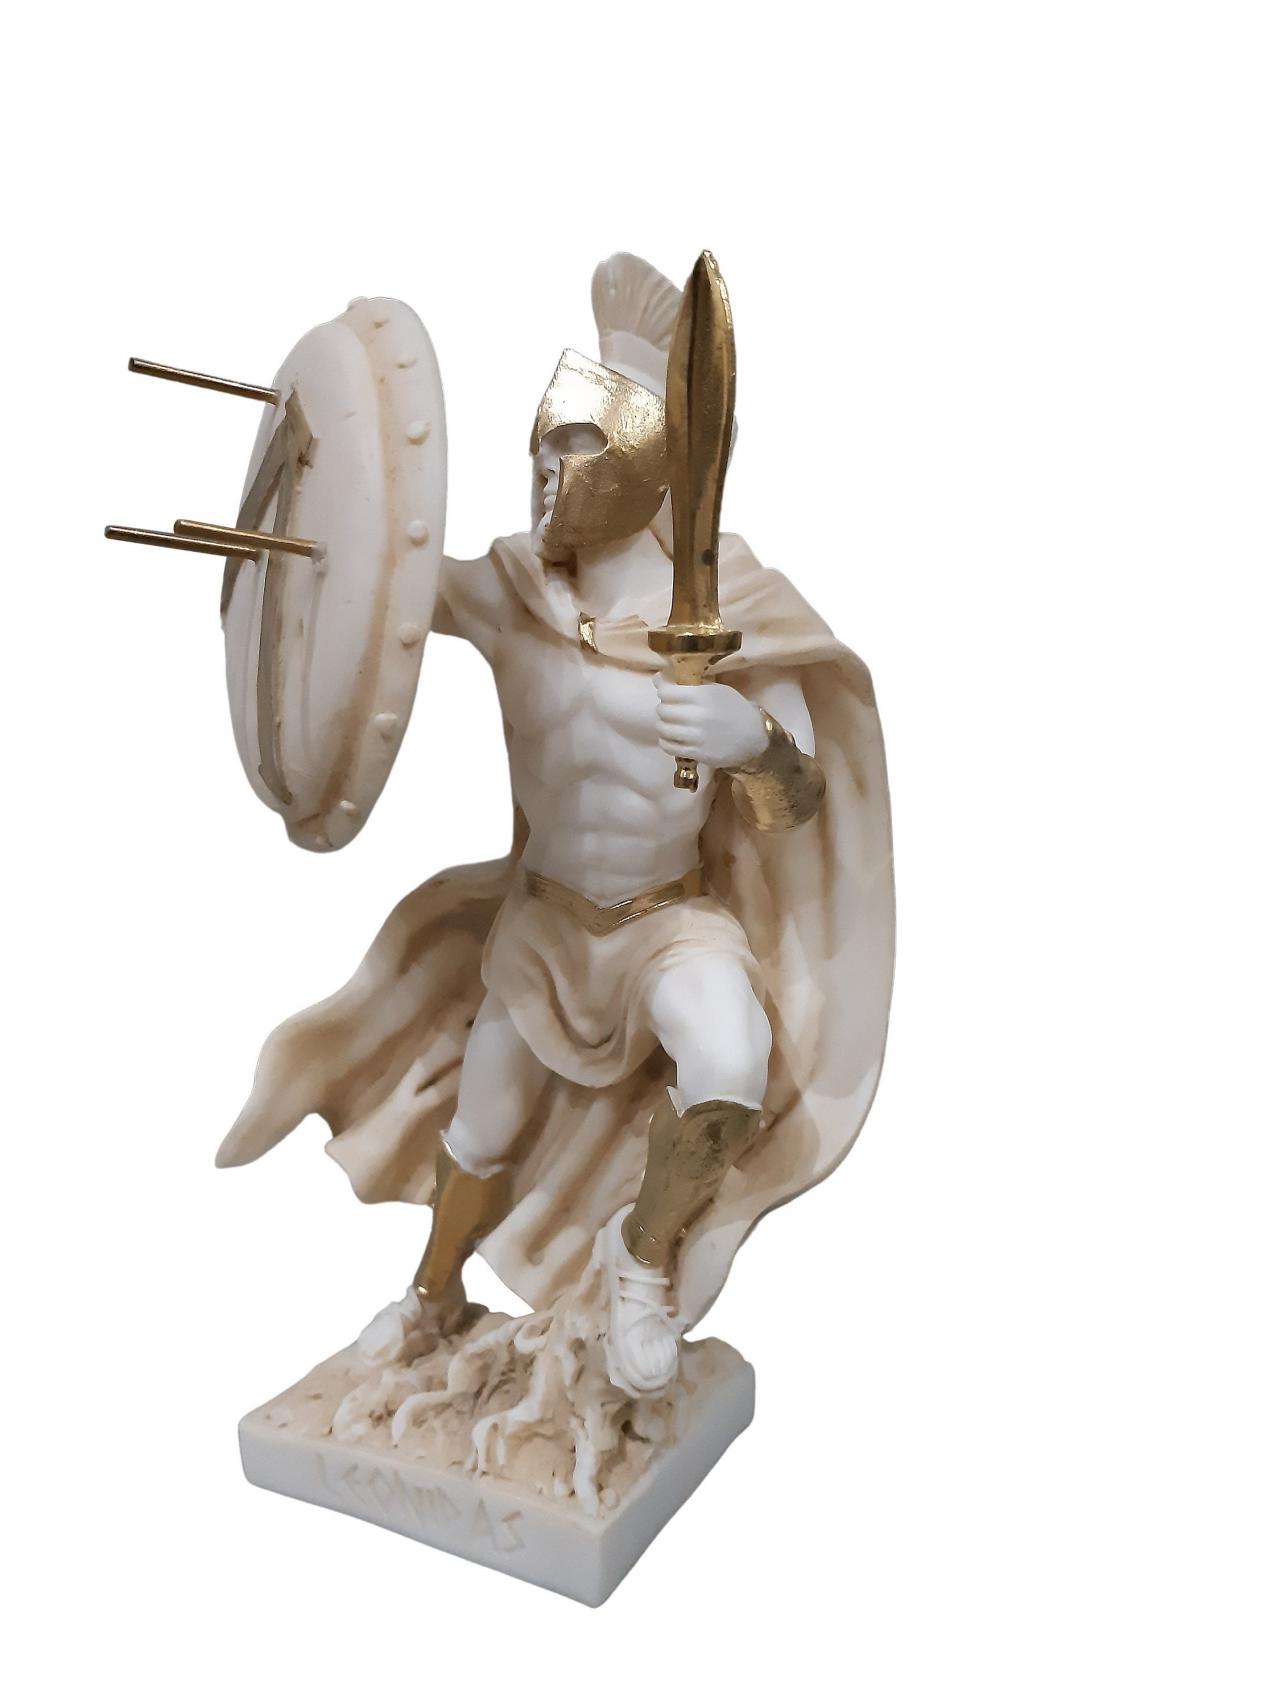 Leonidas Sculpture Spartan King Handmade Alabaster Statue 20cm - 7.87"